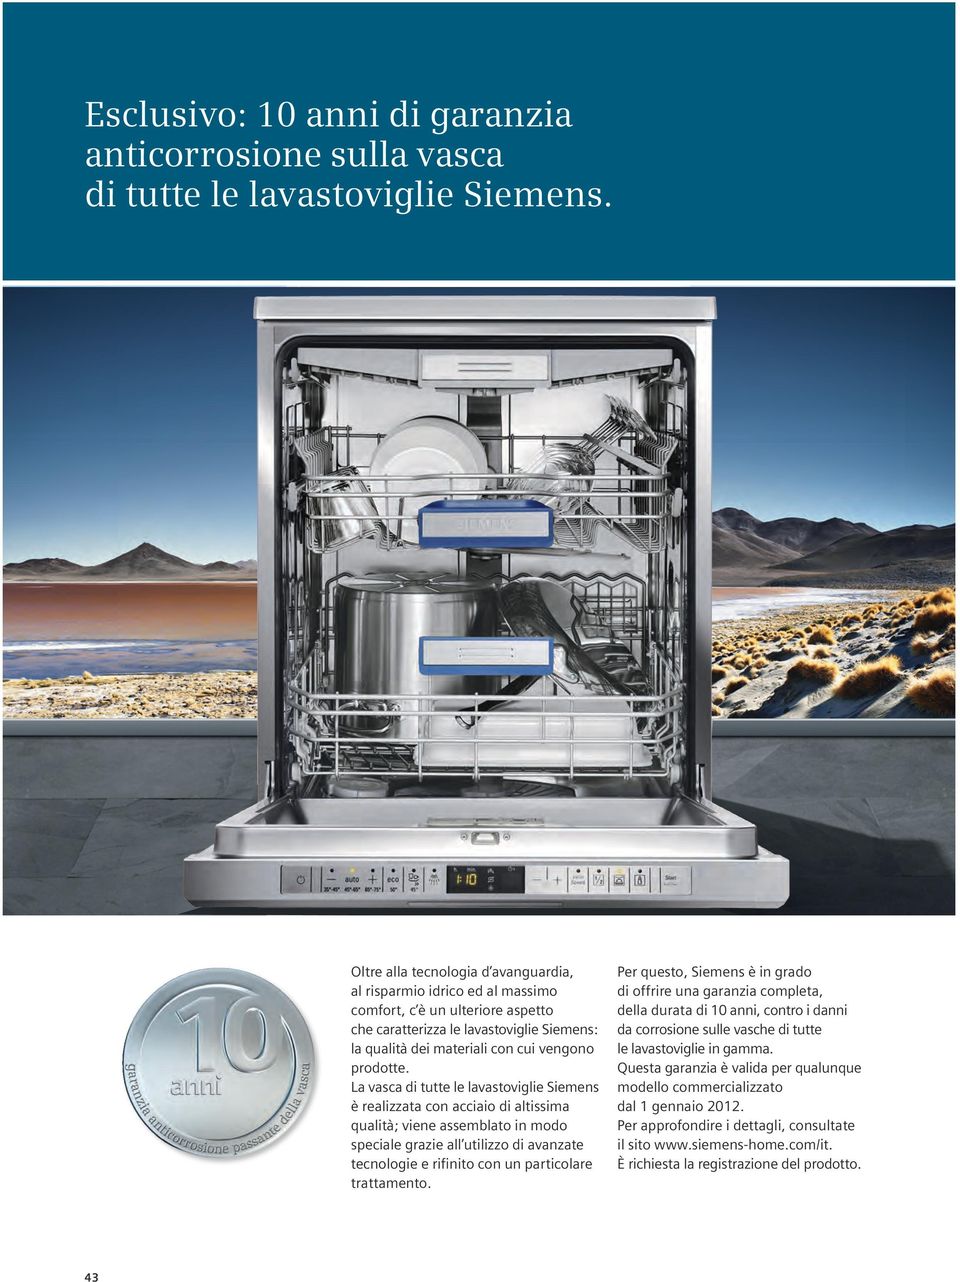 La vasca di tutte le lavastoviglie Siemens è realizzata con acciaio di altissima qualità; viene assemblato in modo speciale grazie all utilizzo di avanzate tecnologie e rifinito con un particolare